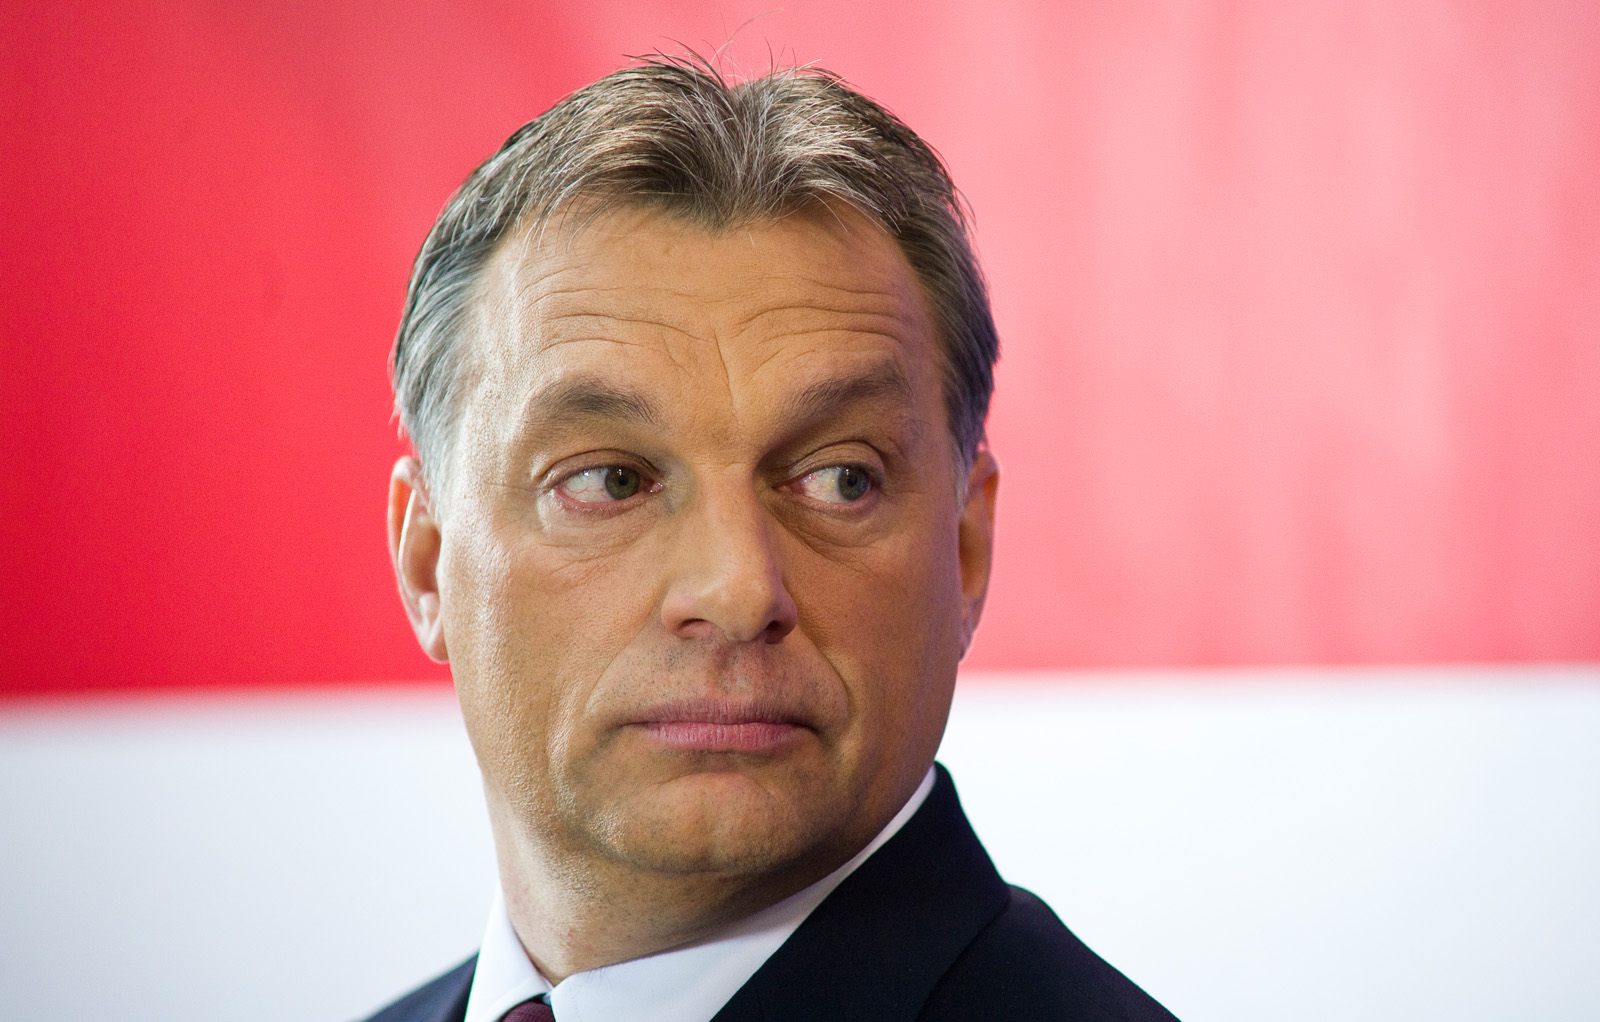 Maďarský premiér Viktor Orbán (Wikimedia)